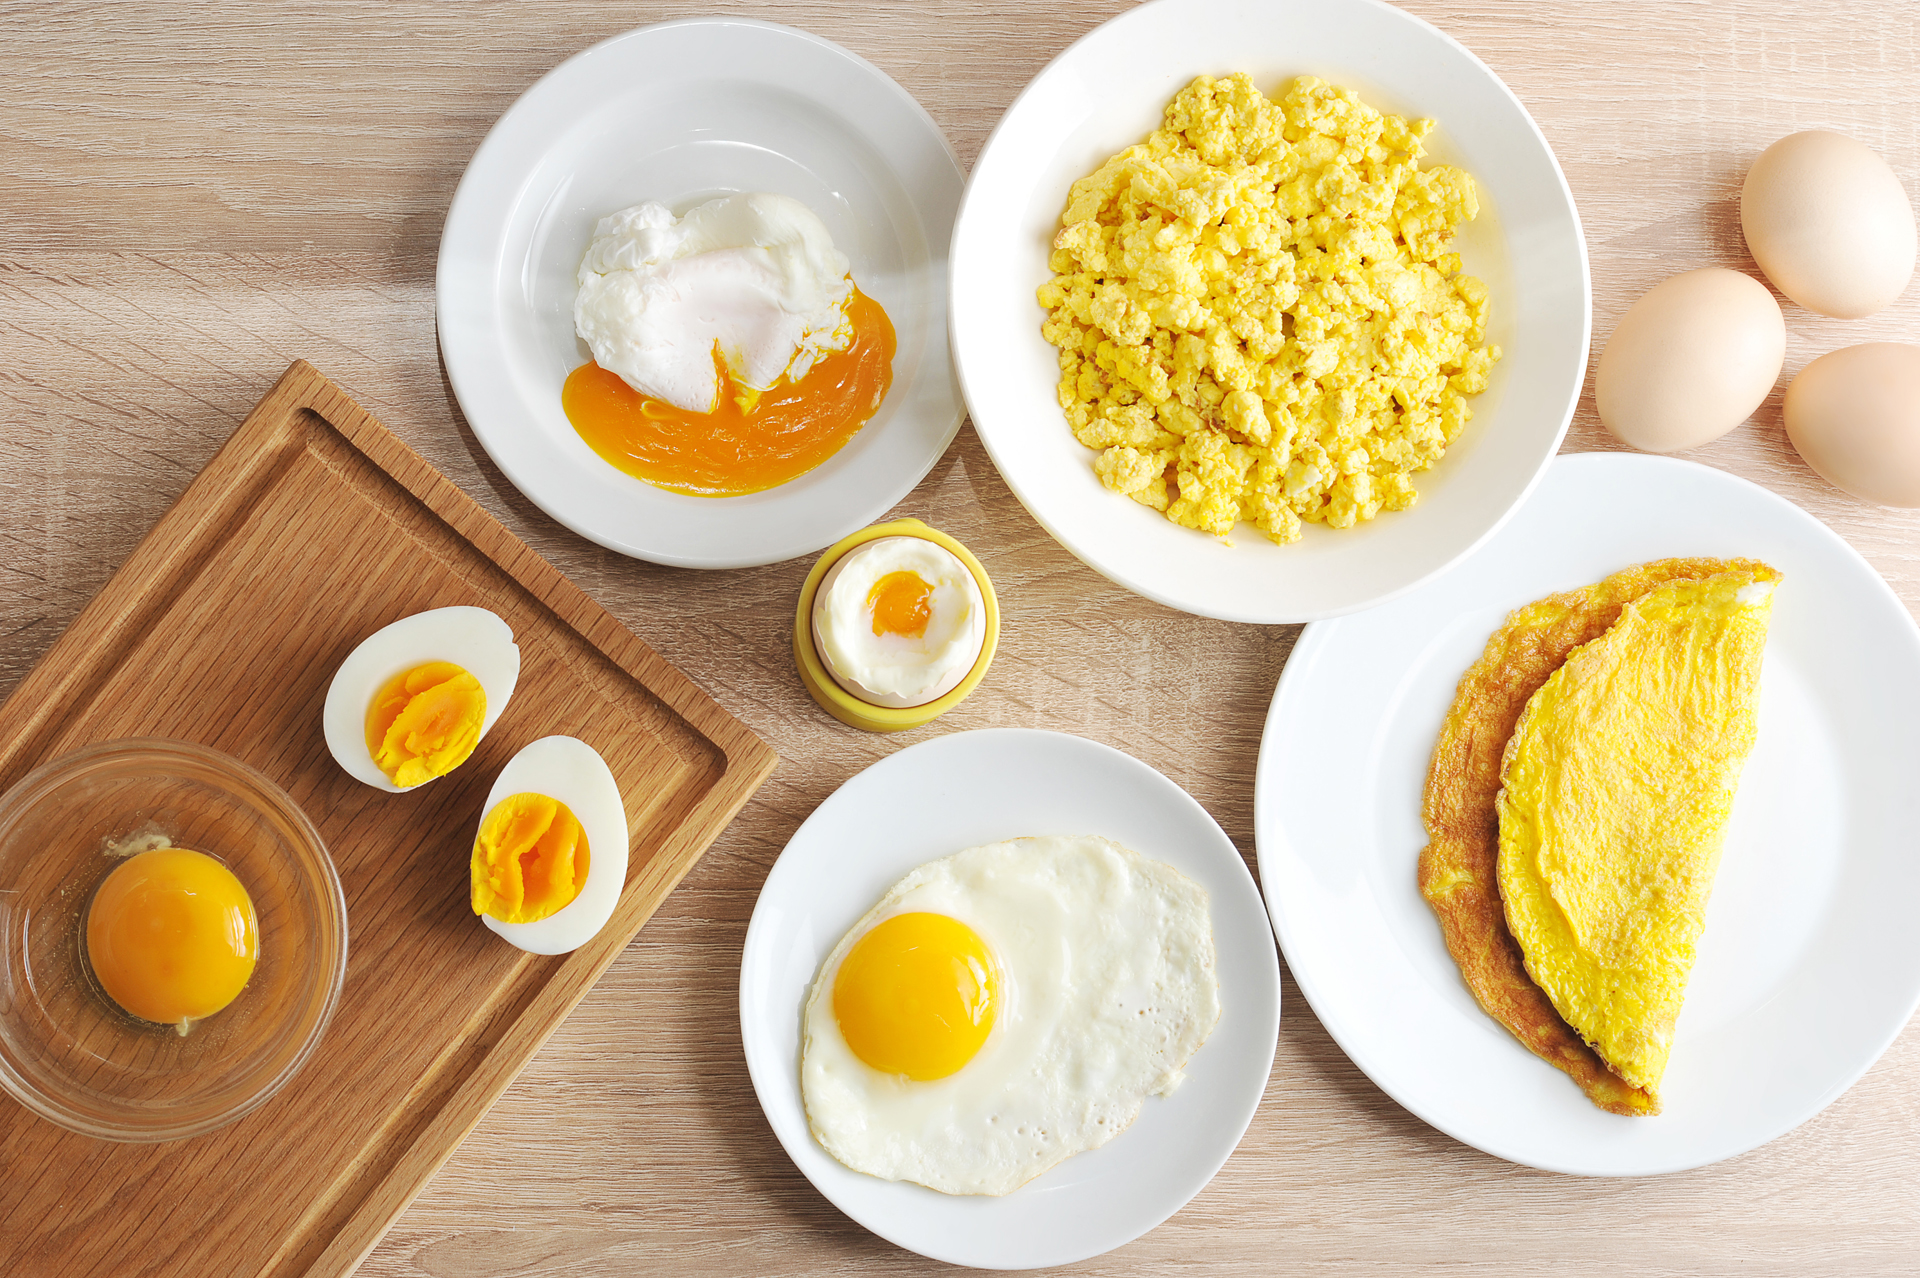 Comer un huevo por día favorece el buen dormir y no está asociado con un mayor riesgo de enfermedad cardiovascular